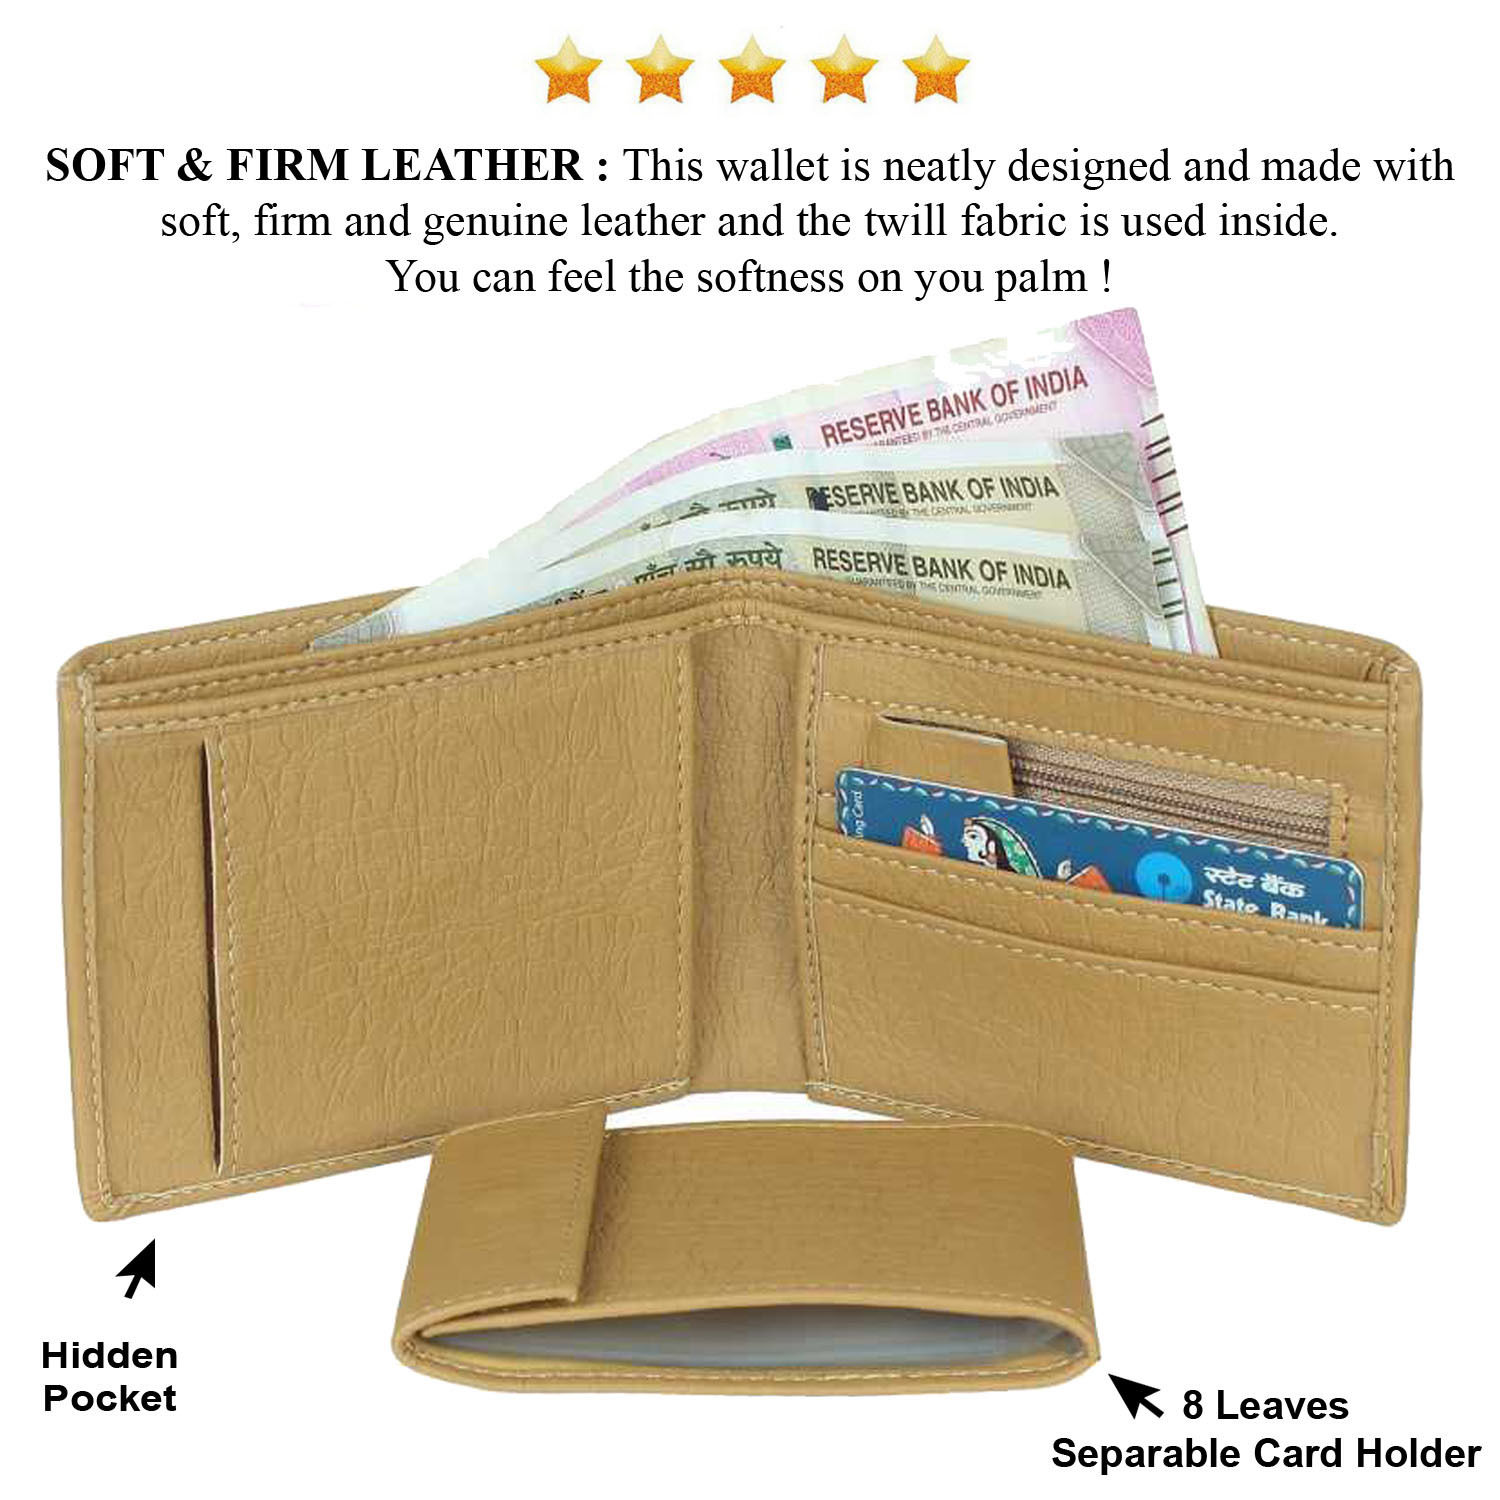 Mens Wallet: Original Bison Card Envelope | leather wallets KMM & Co.